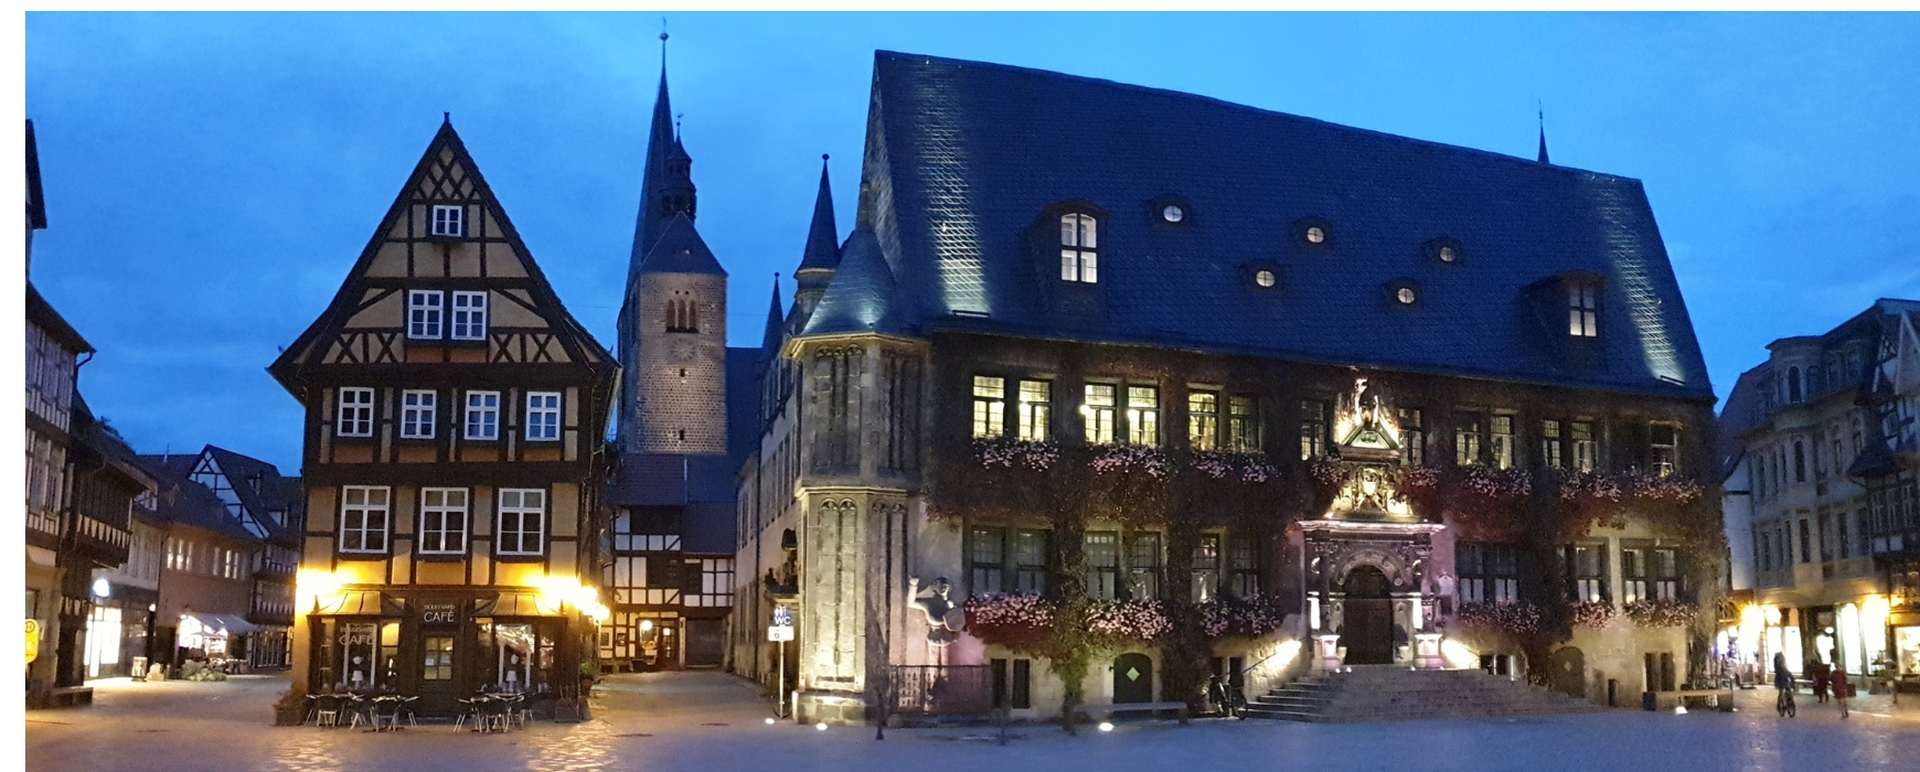 Marktplatz in Quedlinburg mit dem Rathaus